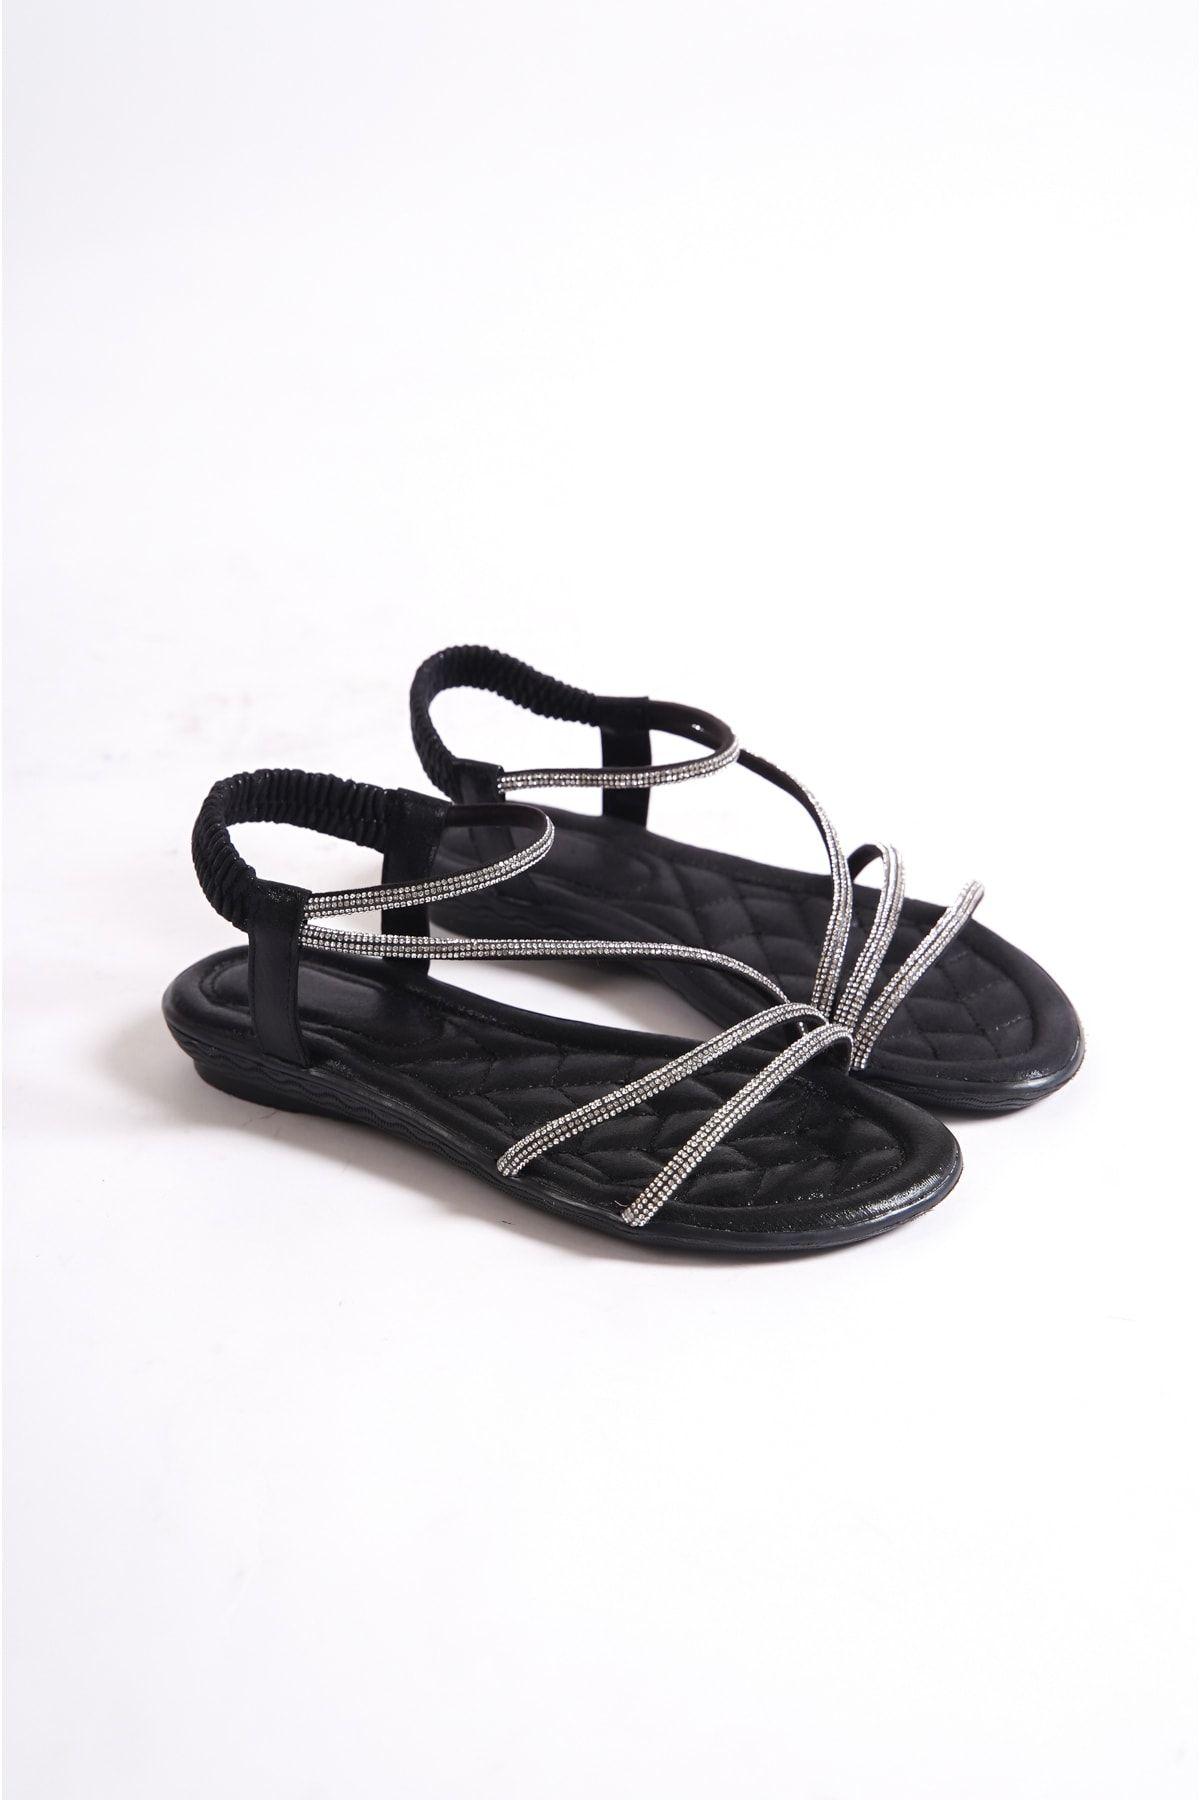 BAKGİY Siyah Simli Kadın Taşlı Lastikli Sandalet BG1167-123-0003